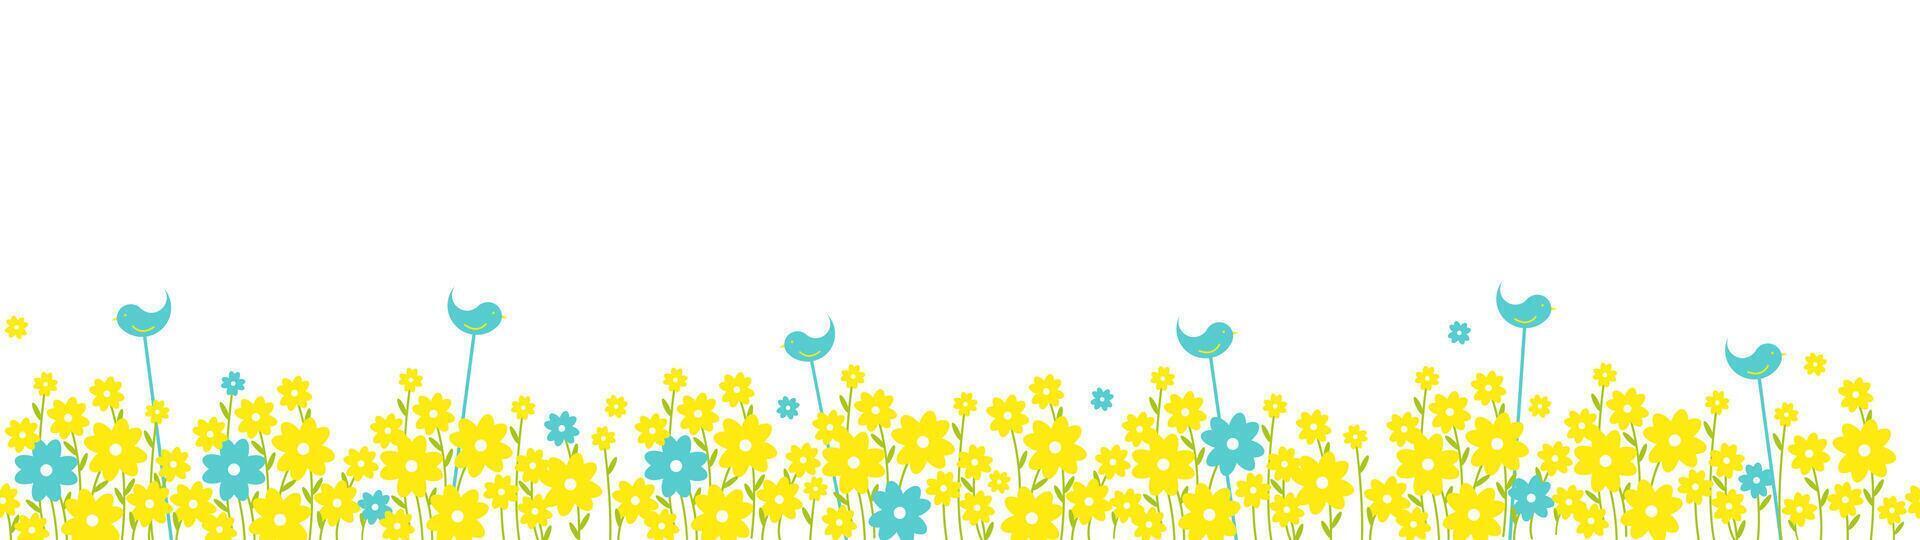 brilhante Primavera floral vetor desatado grandes panorâmico fundo com azul e amarelo flores e pássaros em uma branco.